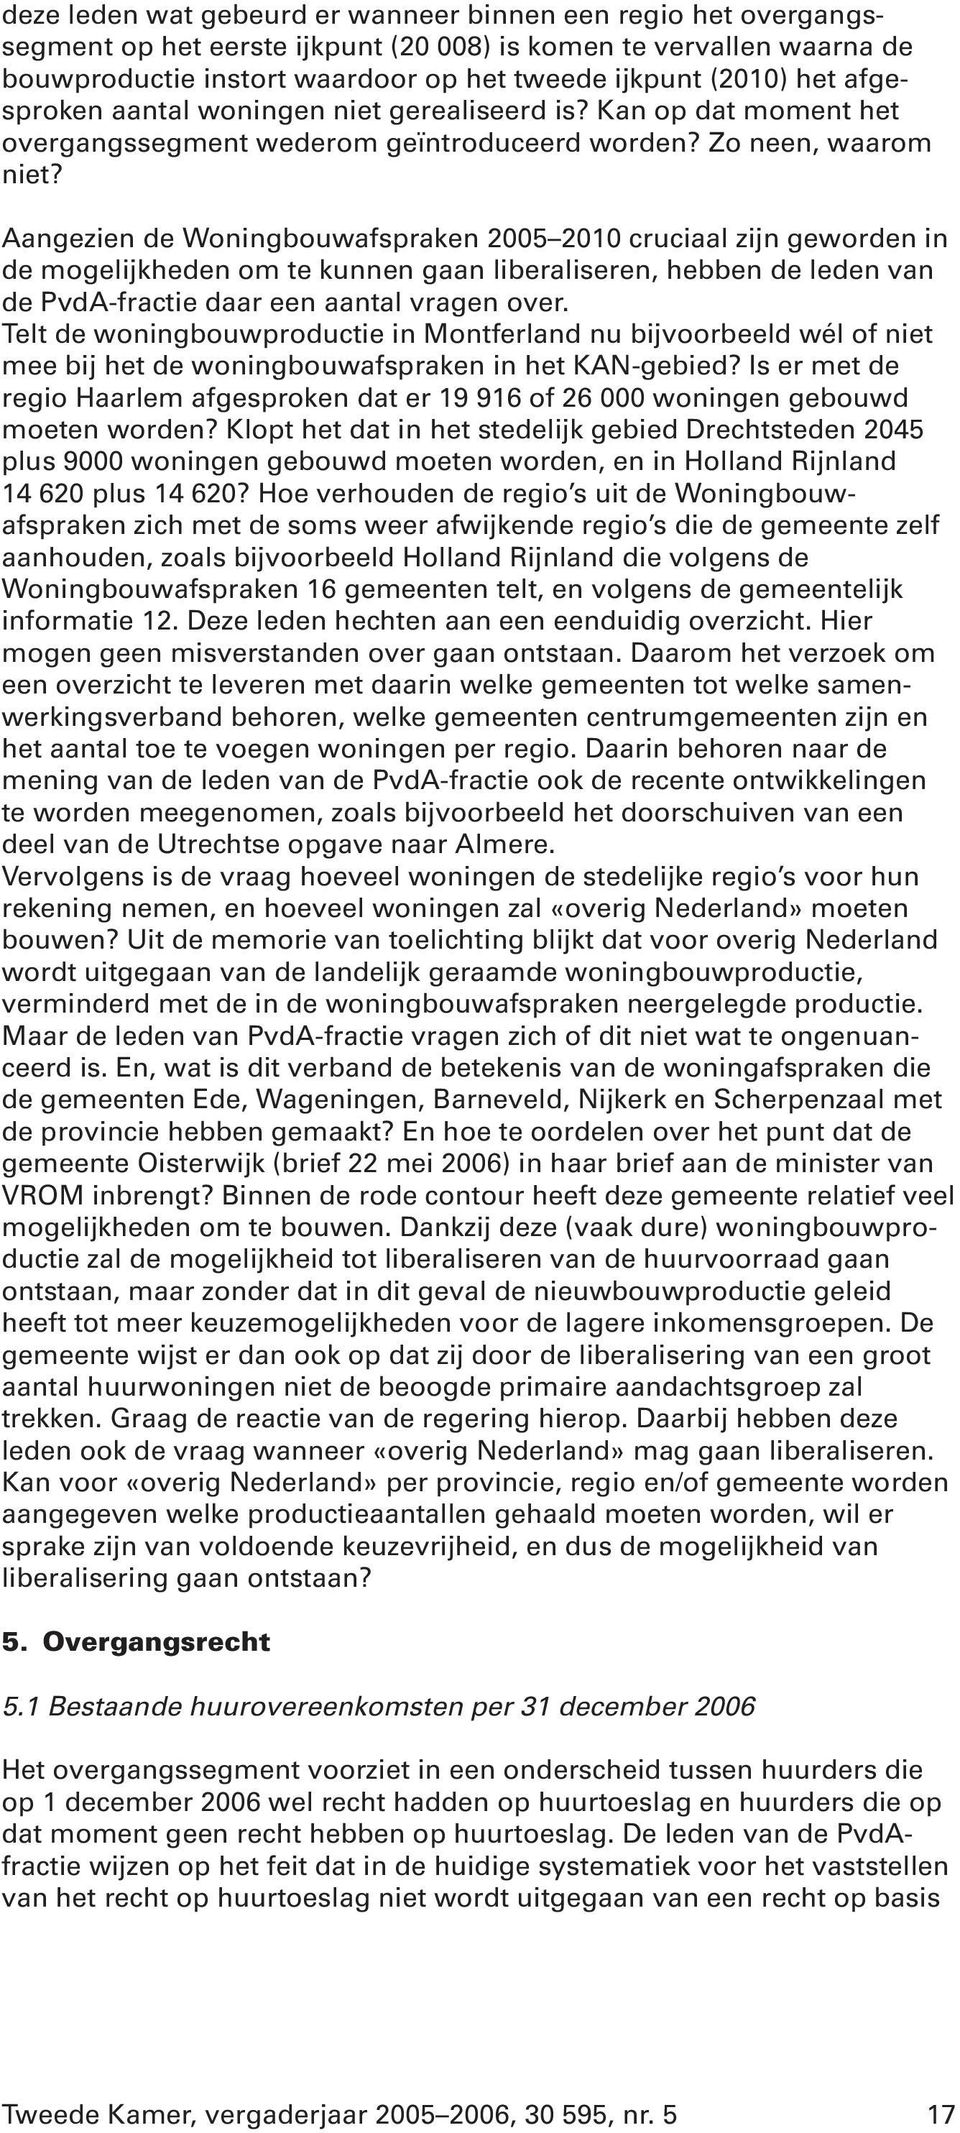 Aangezien de Woningbouwafspraken 2005 2010 cruciaal zijn geworden in de mogelijkheden om te kunnen gaan liberaliseren, hebben de leden van de PvdA-fractie daar een aantal vragen over.